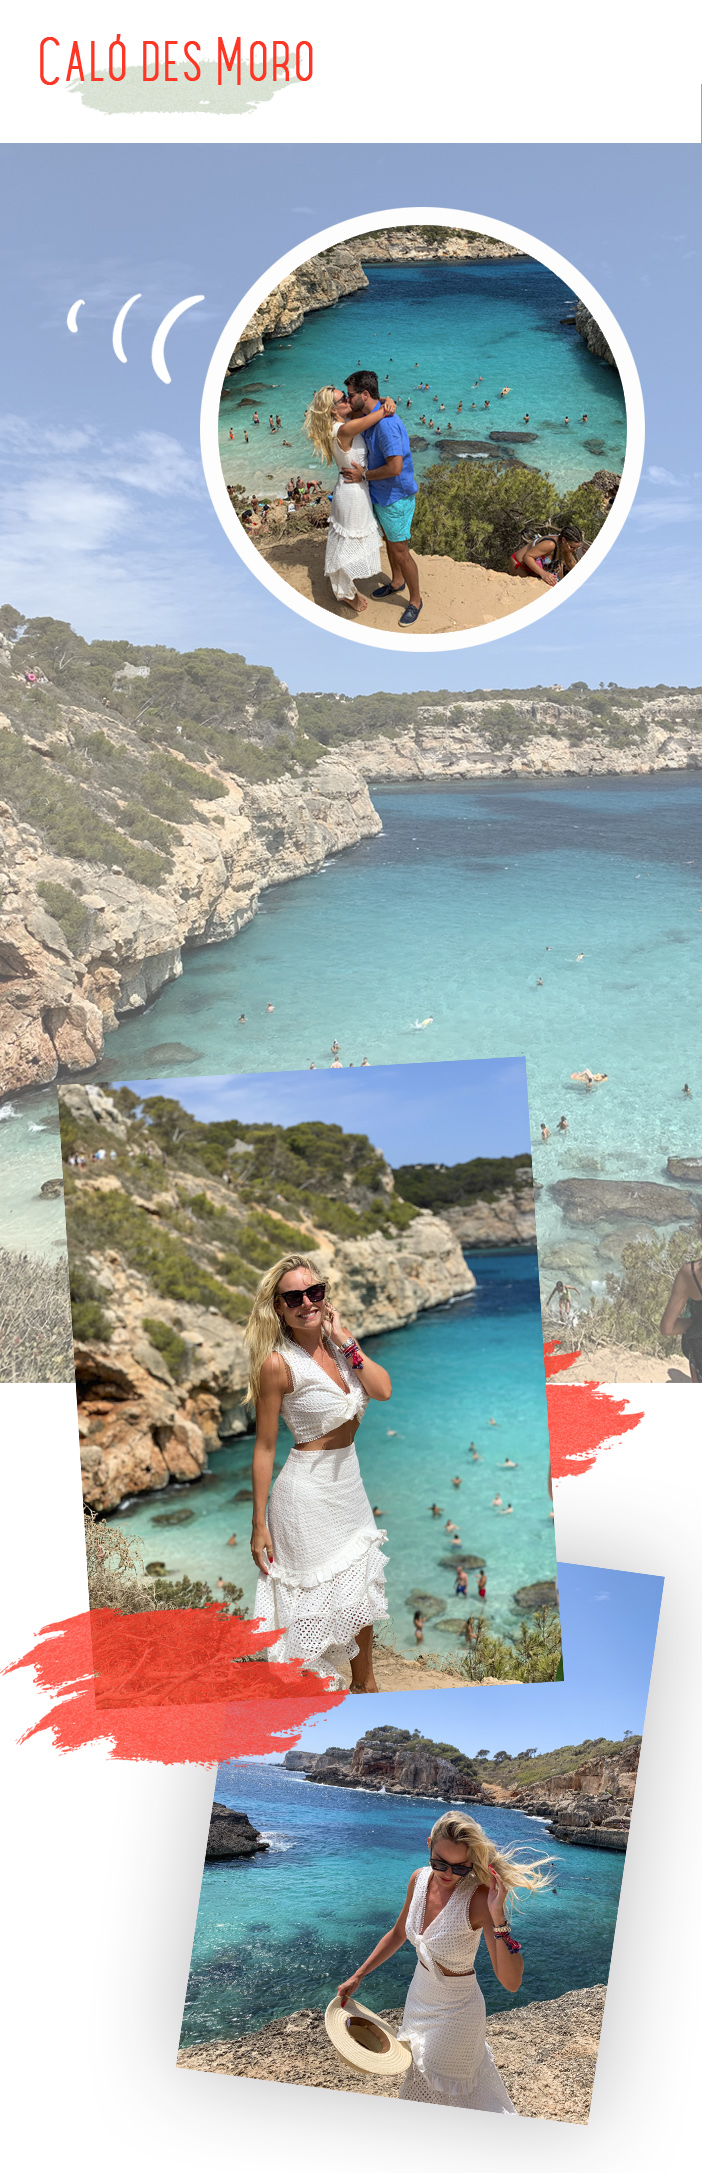 Diário de Bordo - Layla em Ibiza e Palma de Mallorca